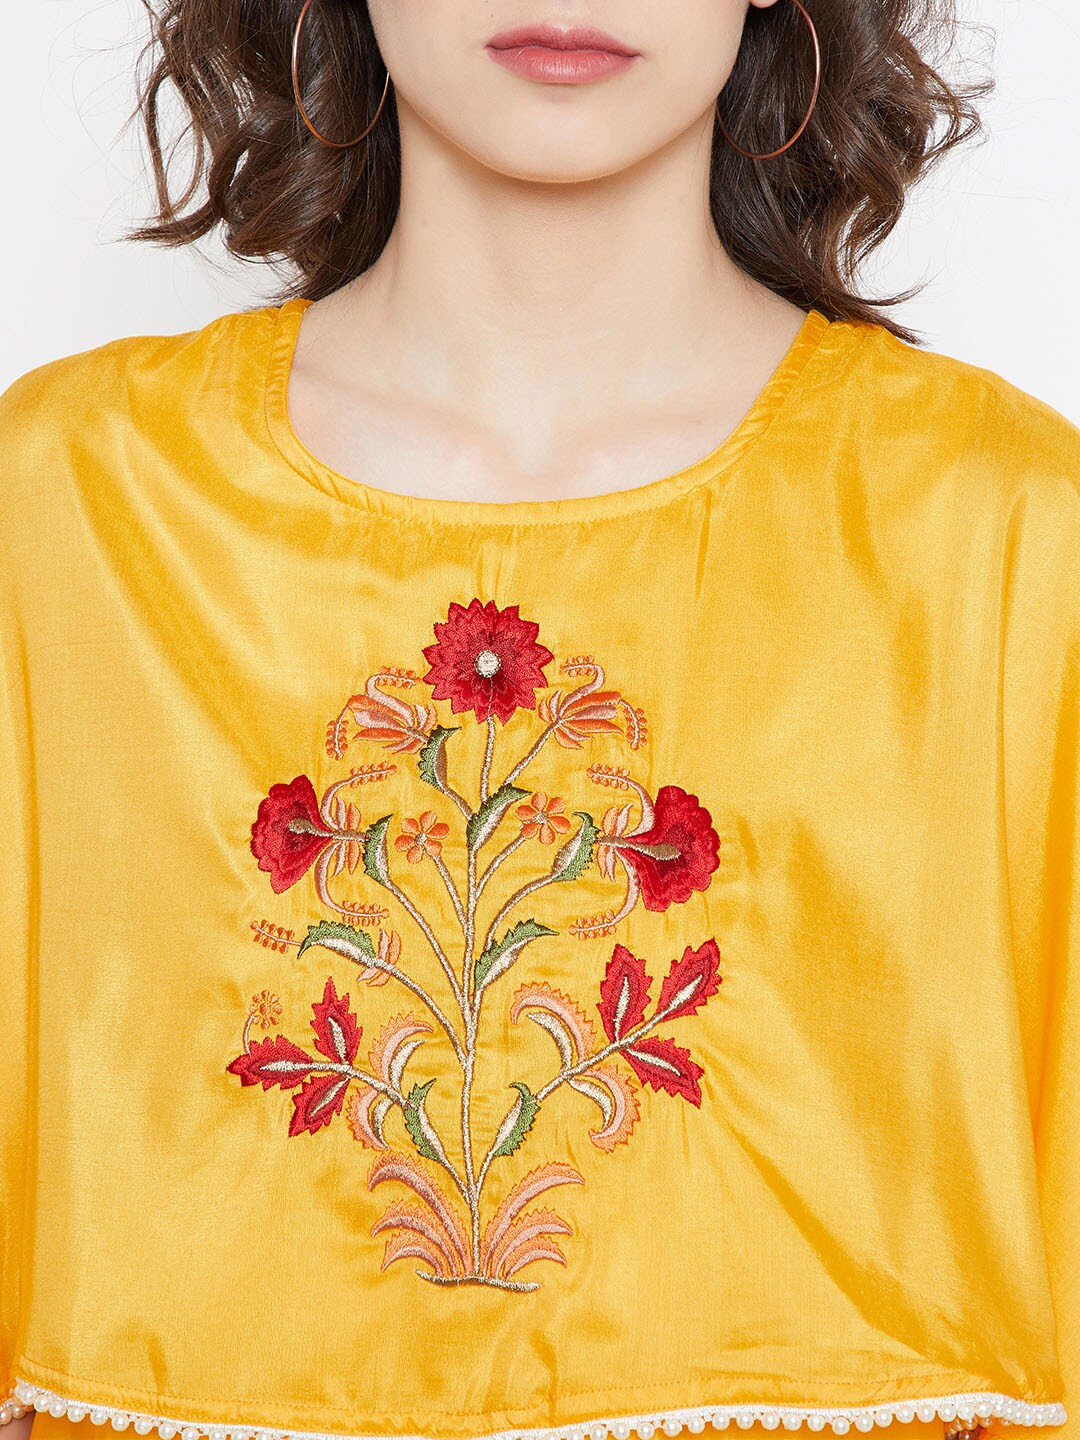 Be Indi Women Yellow Solid Maxi Dress